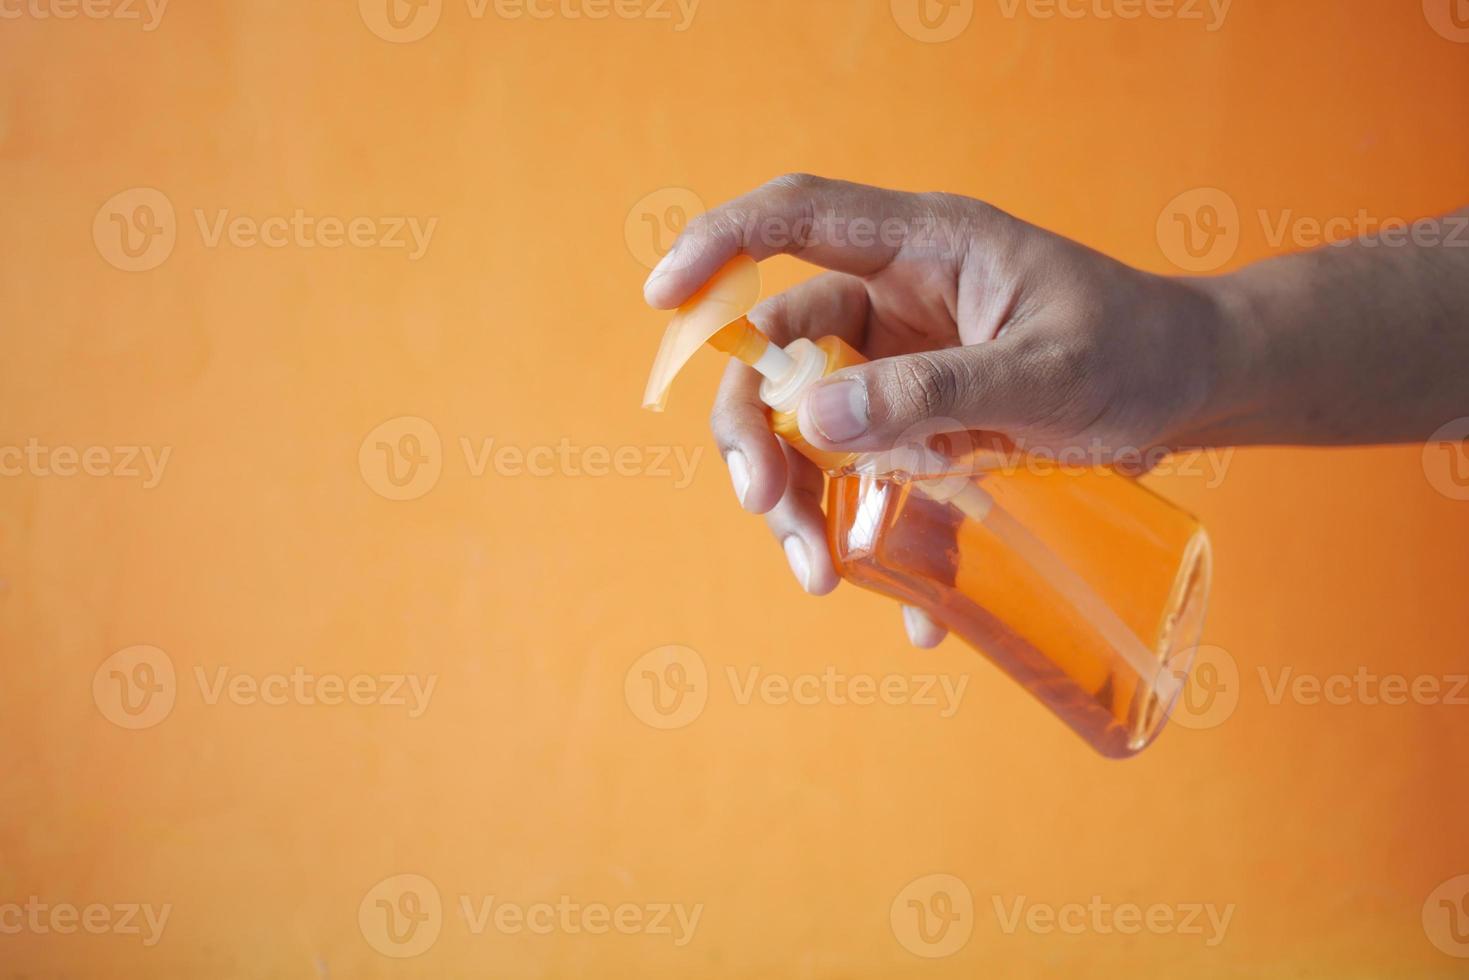 Sosteniendo el líquido de lavado de manos en un recipiente sobre fondo naranja foto